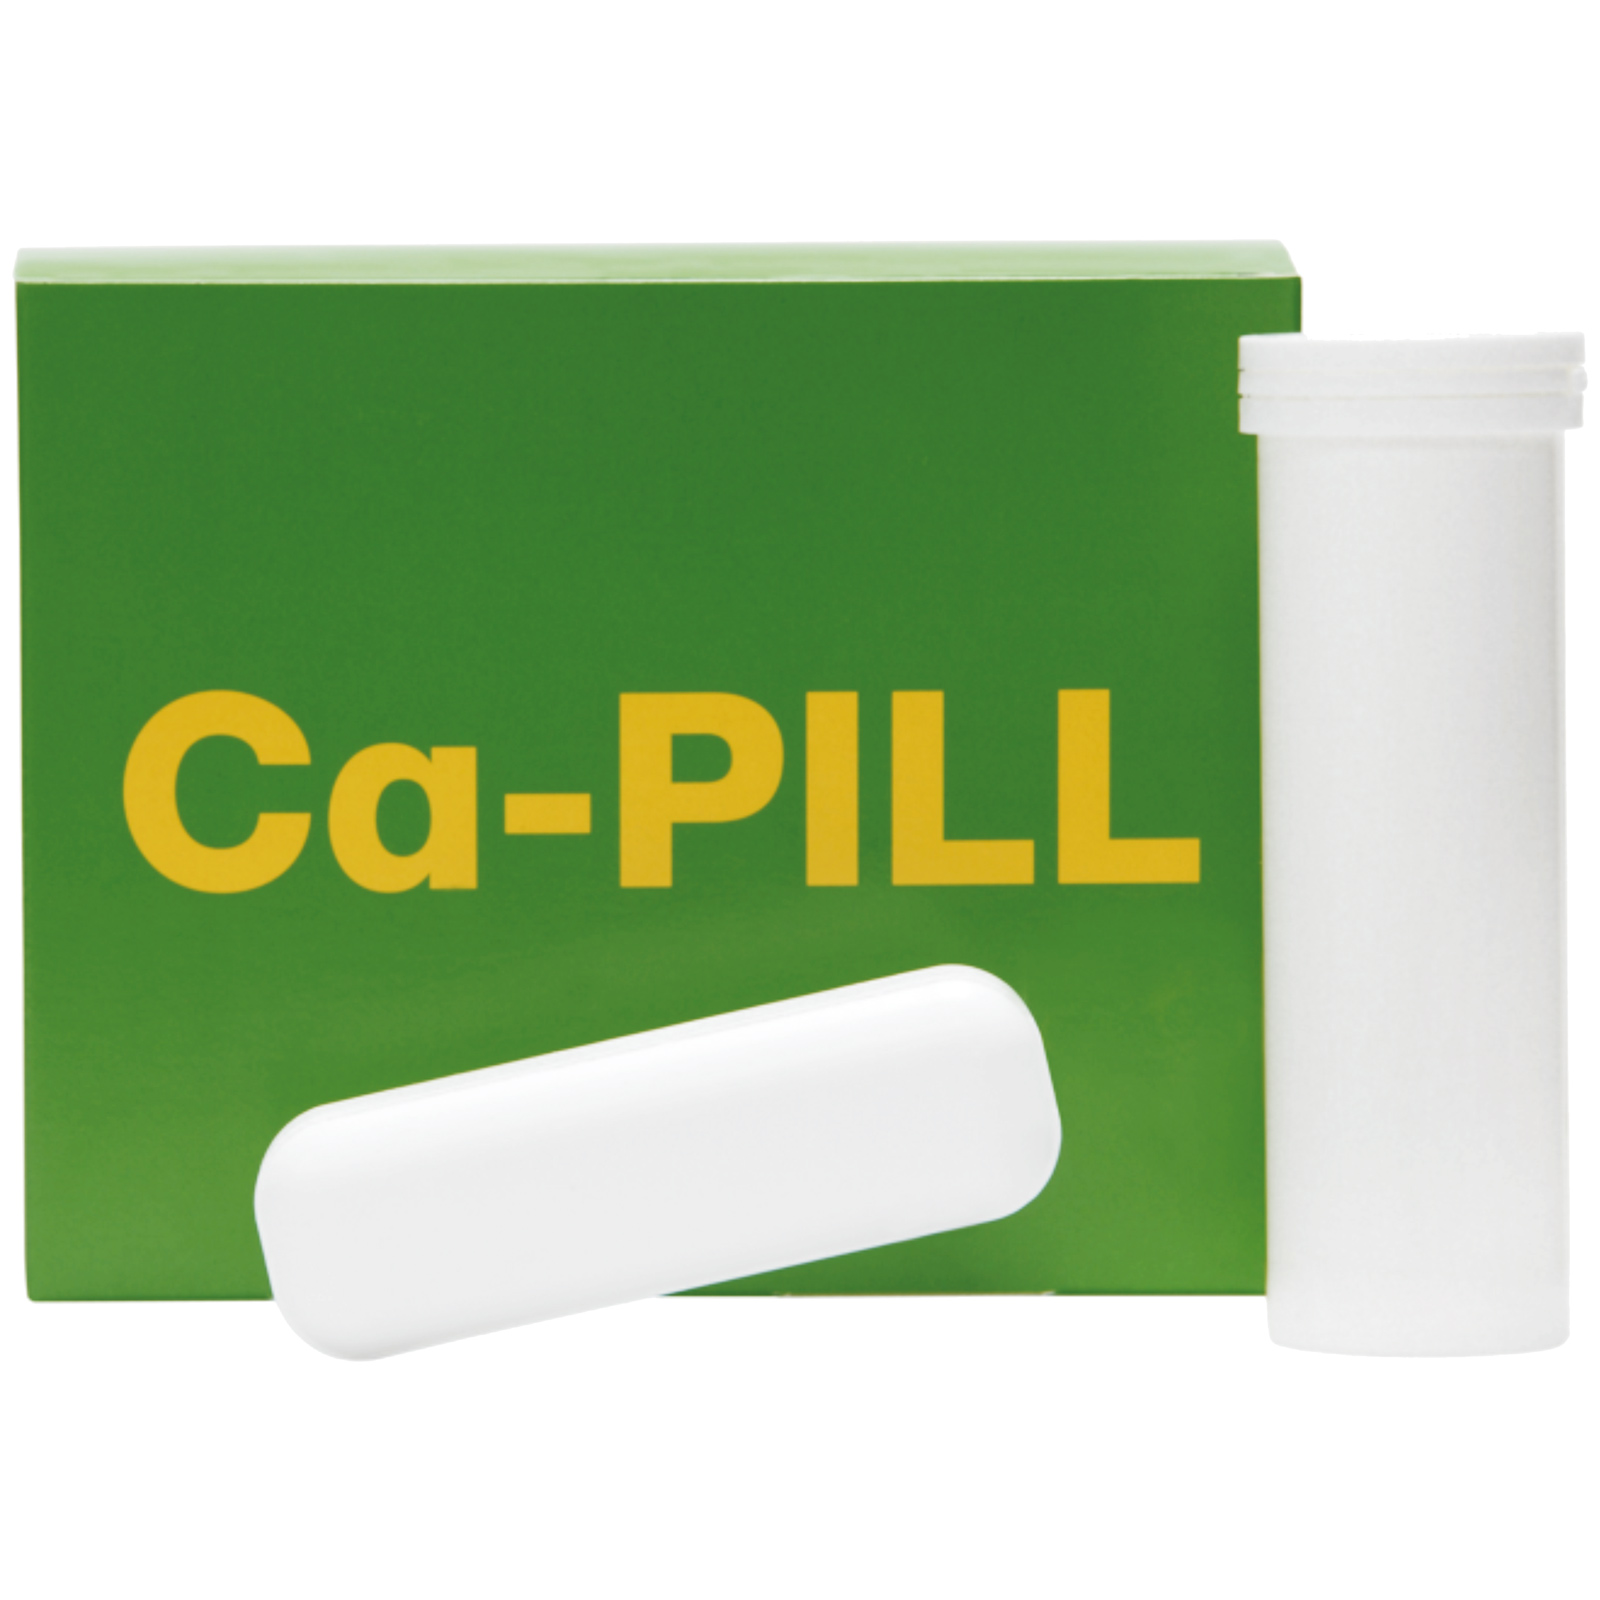 Ca-PILL gegen Festliegen 4 x 85 g